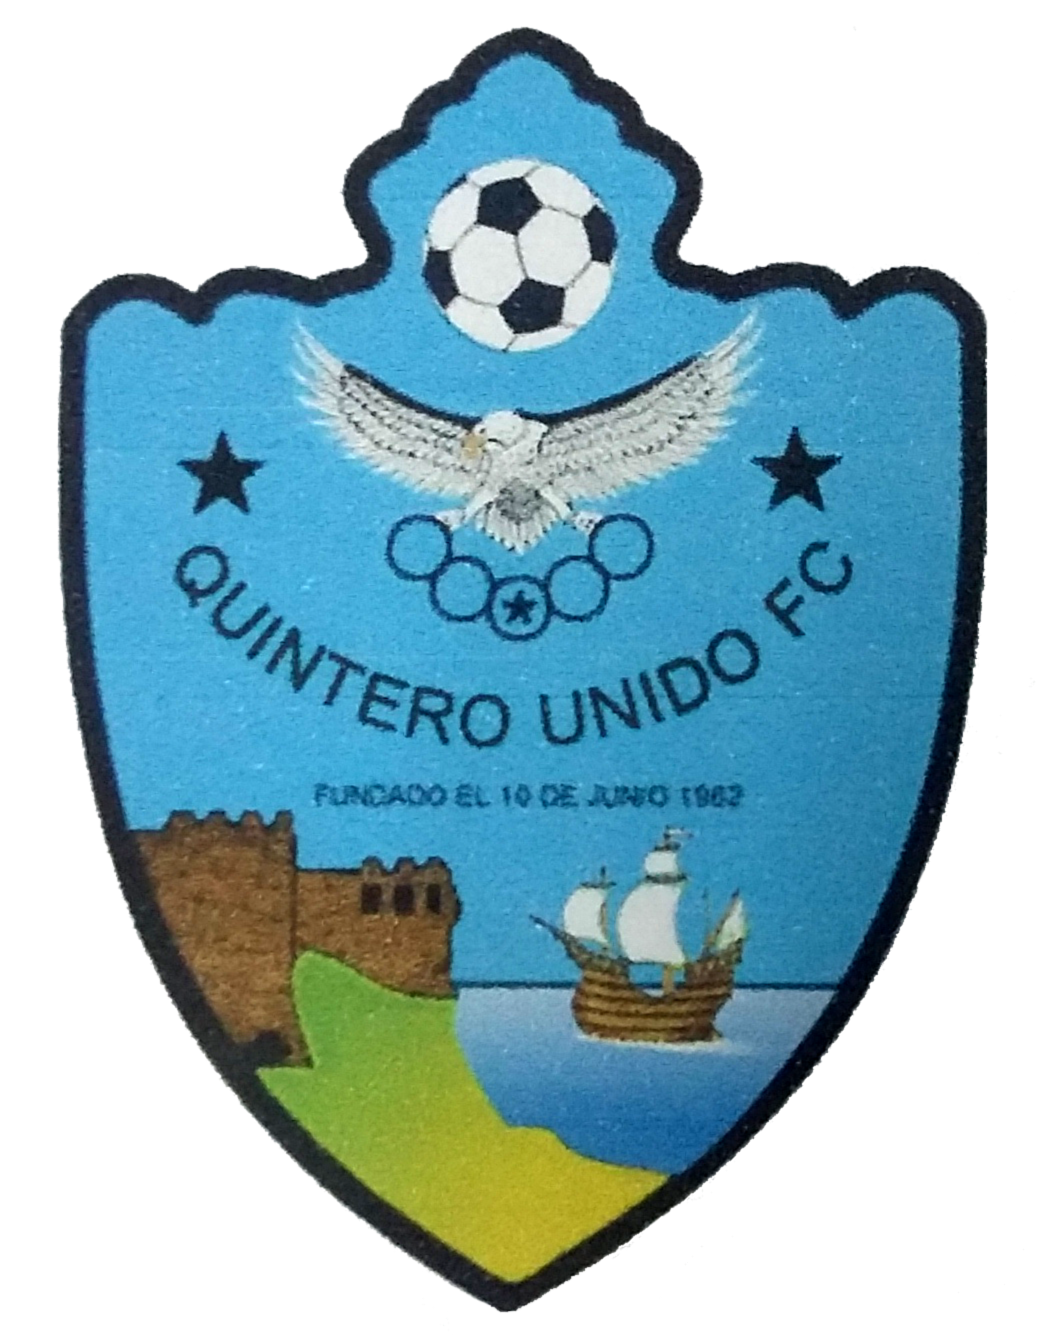 Wappen CD Quintero Unido